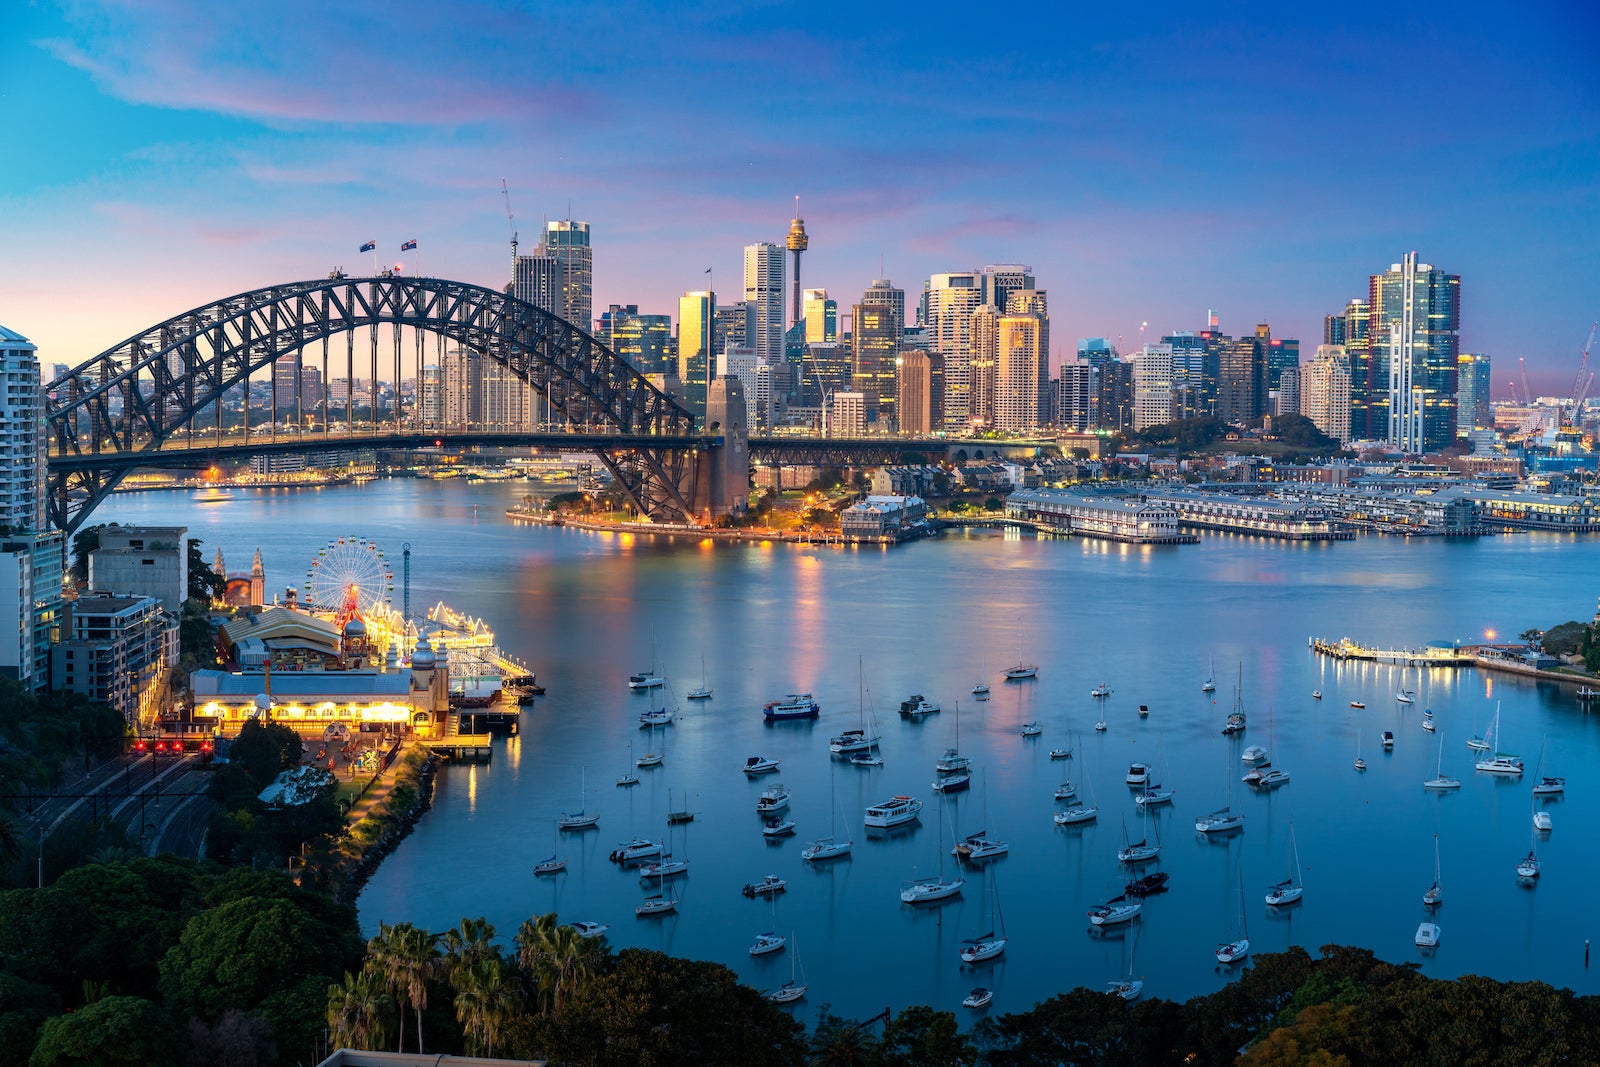 Cityscape of Sydney, Australia with Harbour Bridge